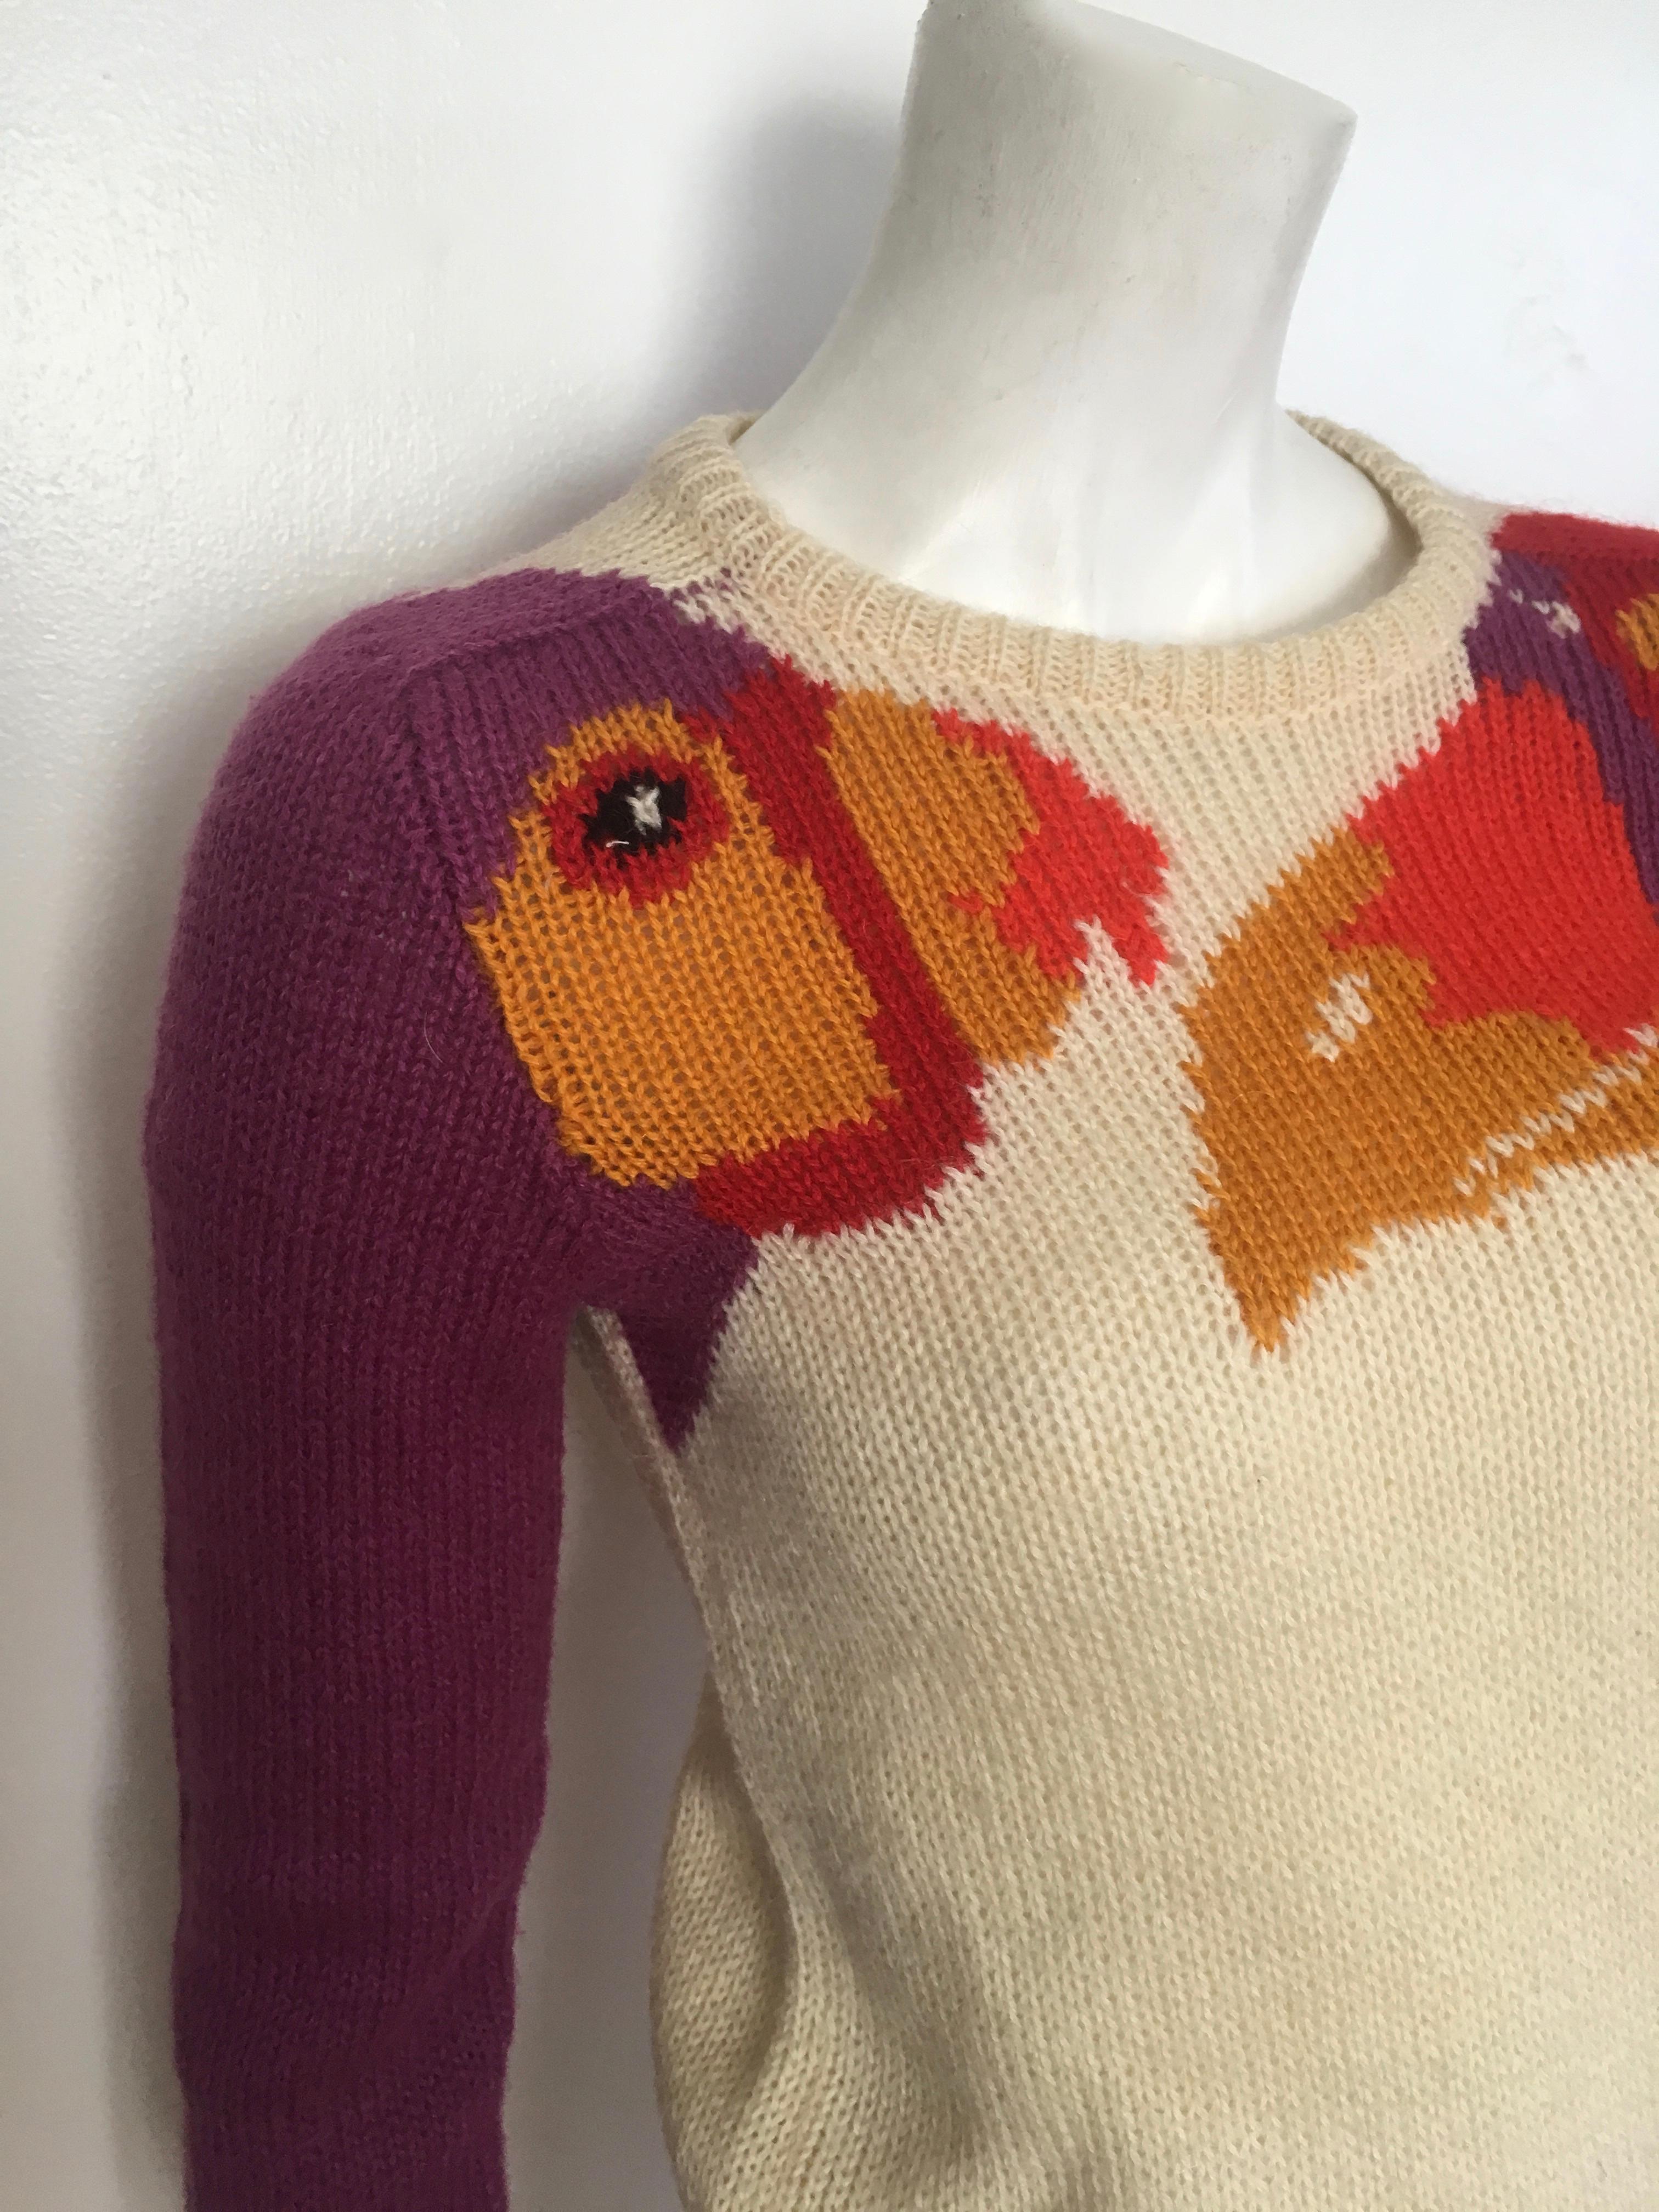 Beige Krizia Maglia 1980s Exotic Birds Iconic Pullover Sweater Size Small.